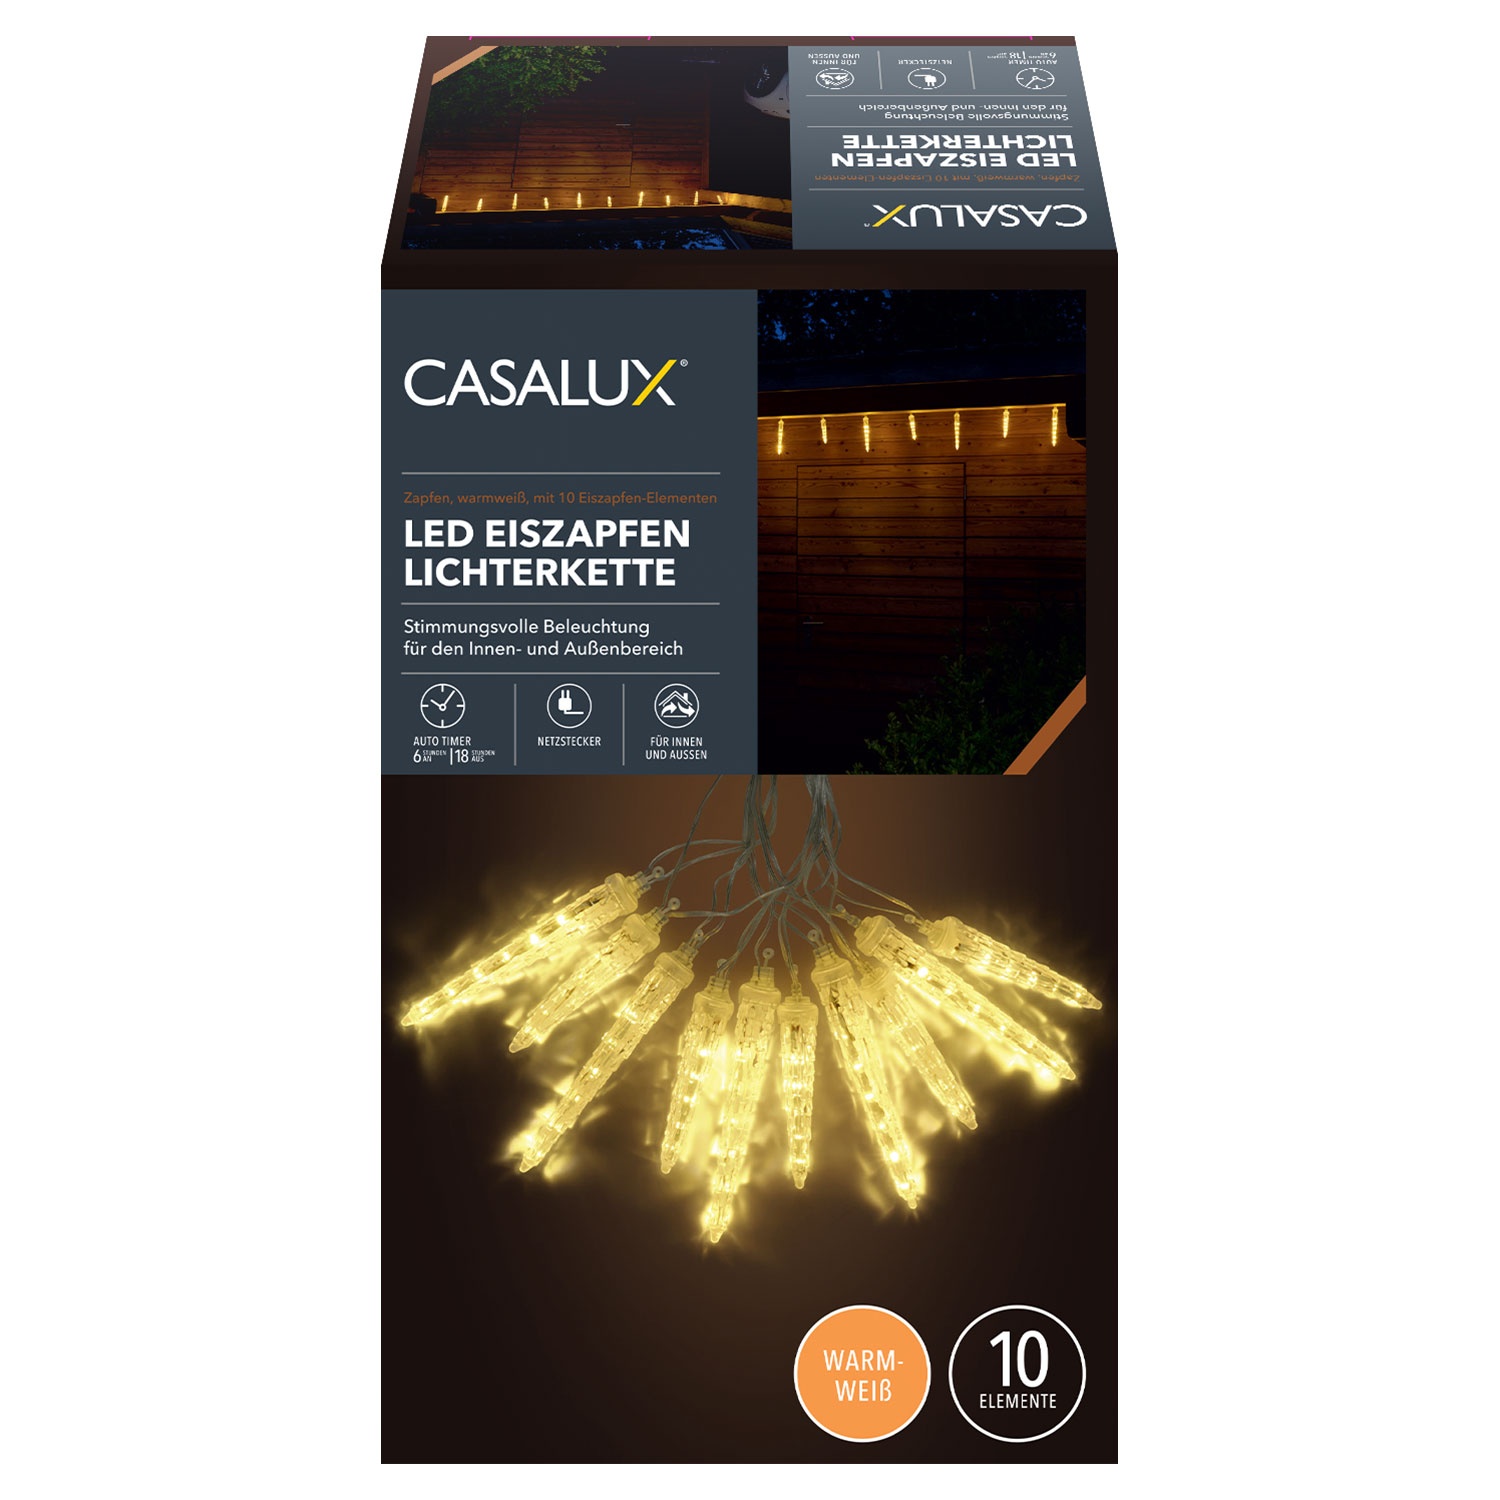 CASALUX LED-Eiszapfen-Lichterkette